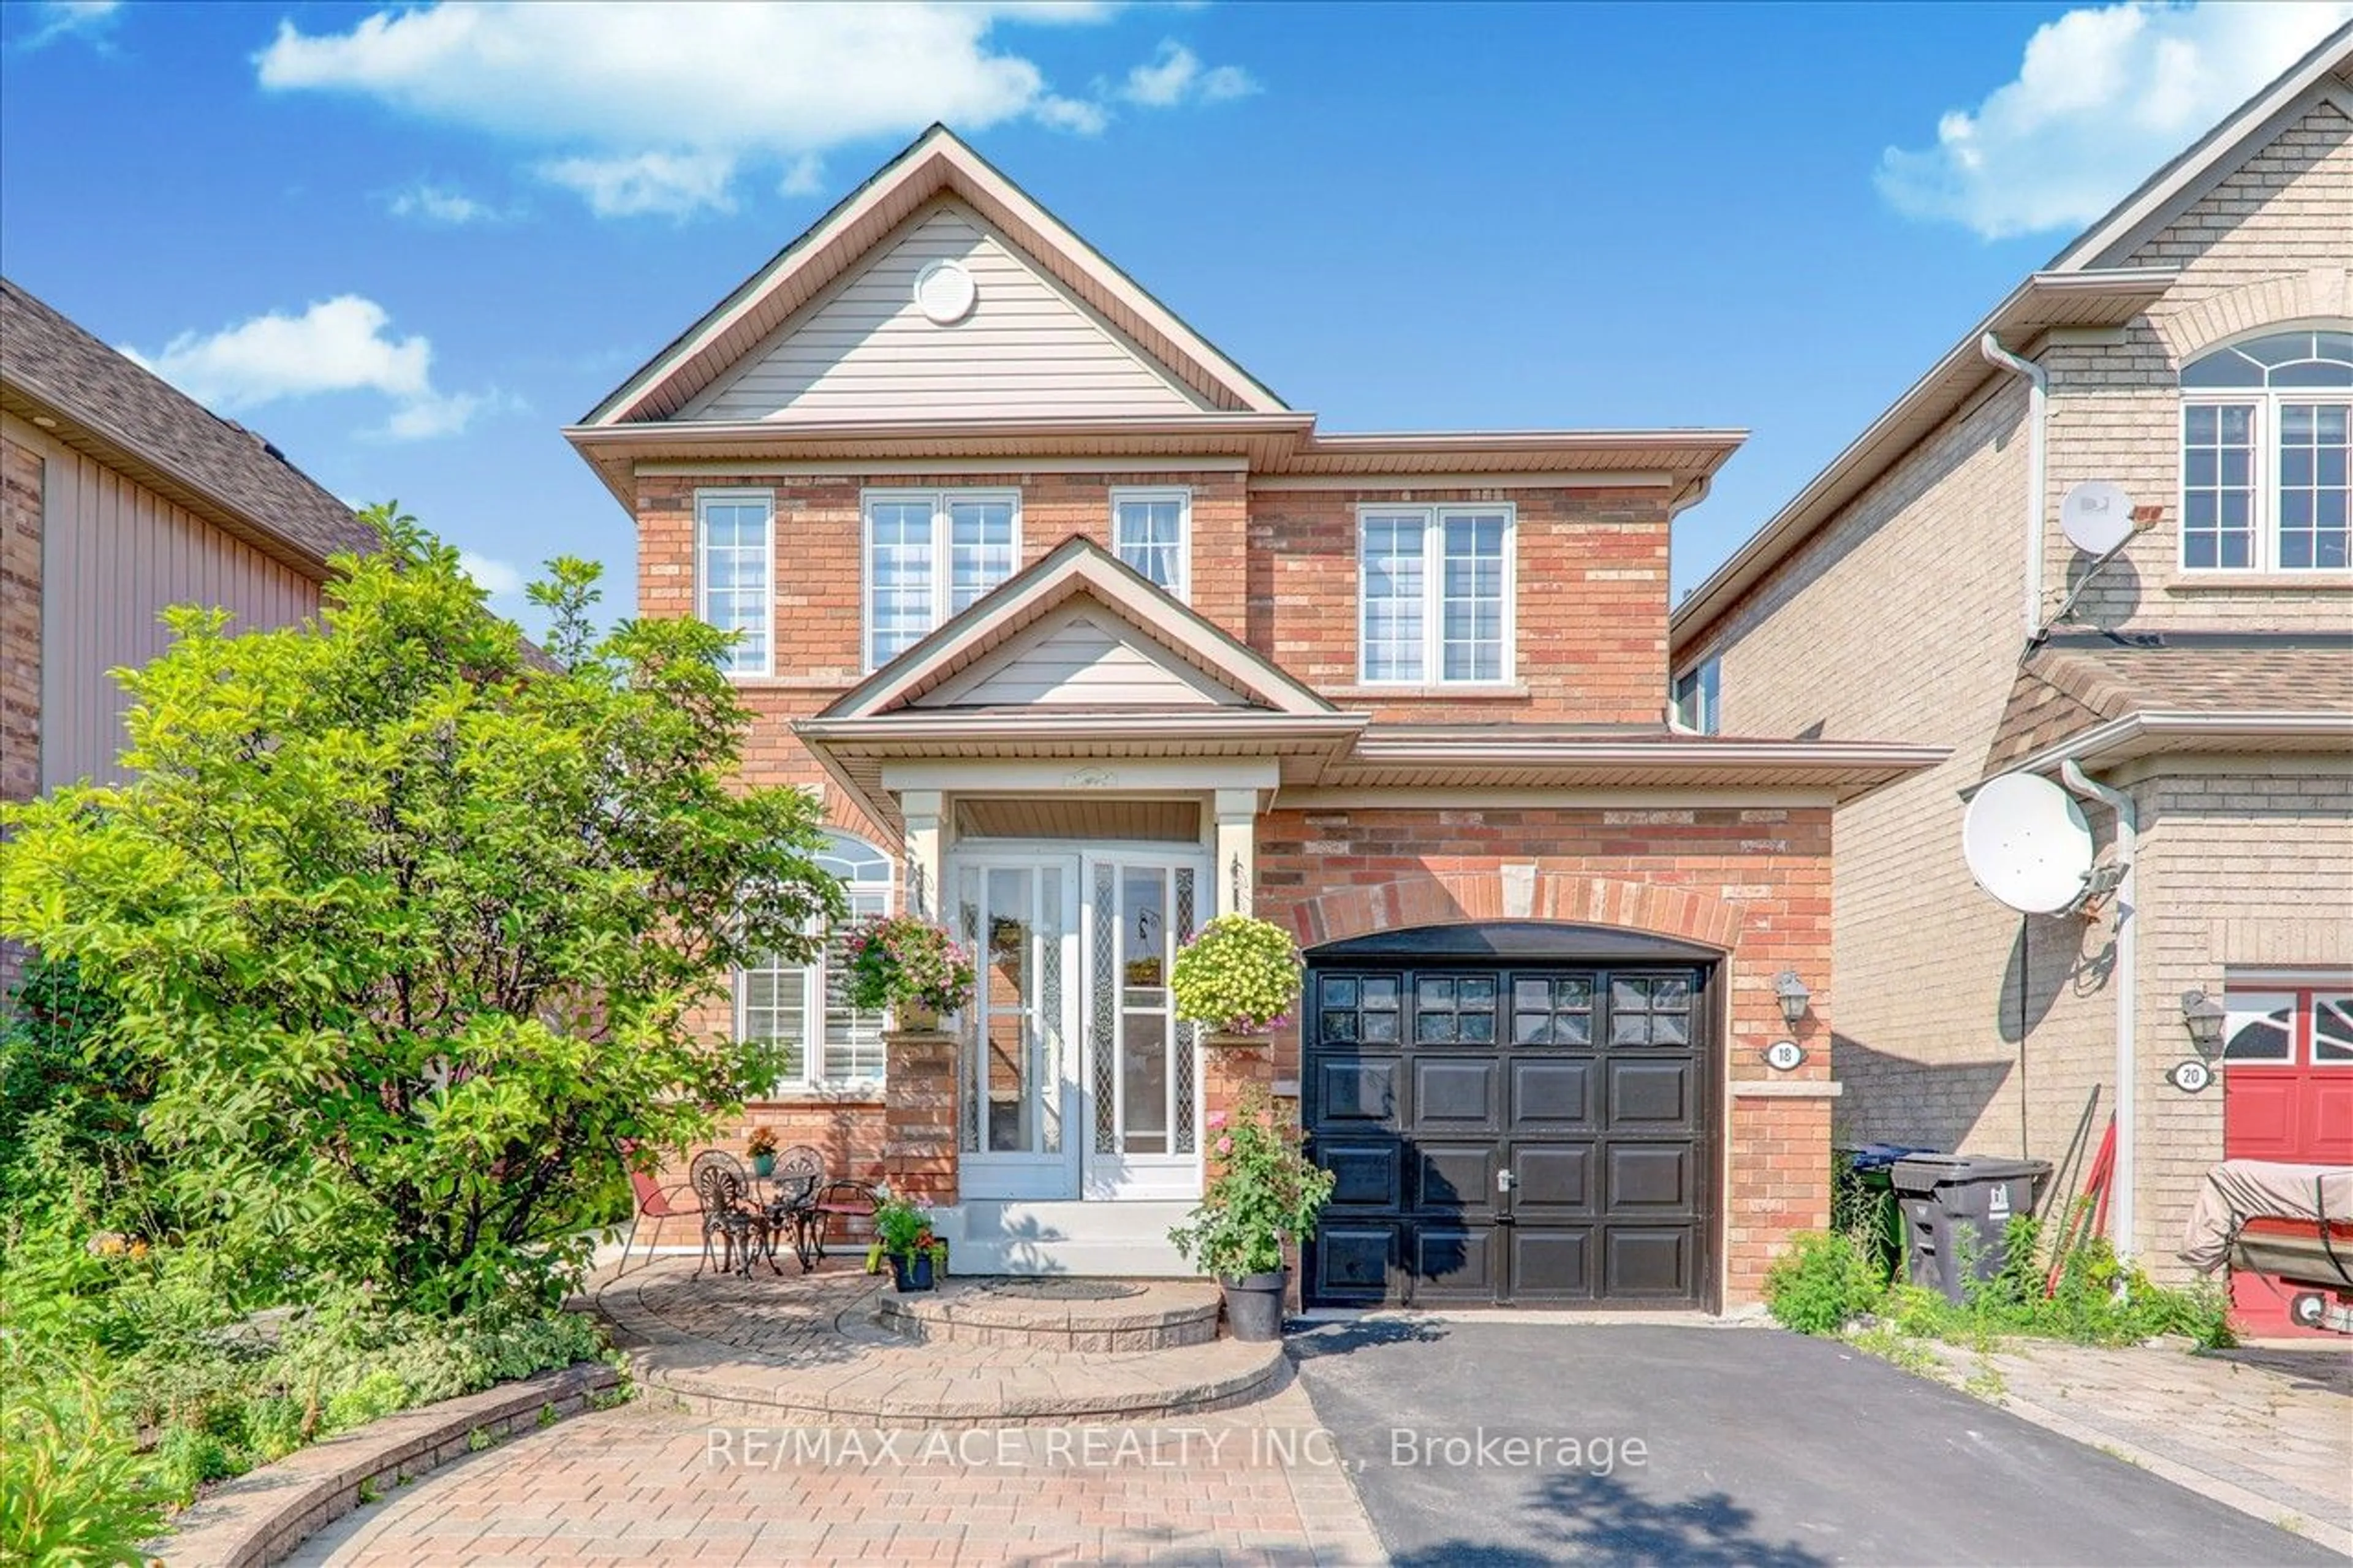 Home with brick exterior material for 18 Gristone Cres, Toronto Ontario M1X 1V1